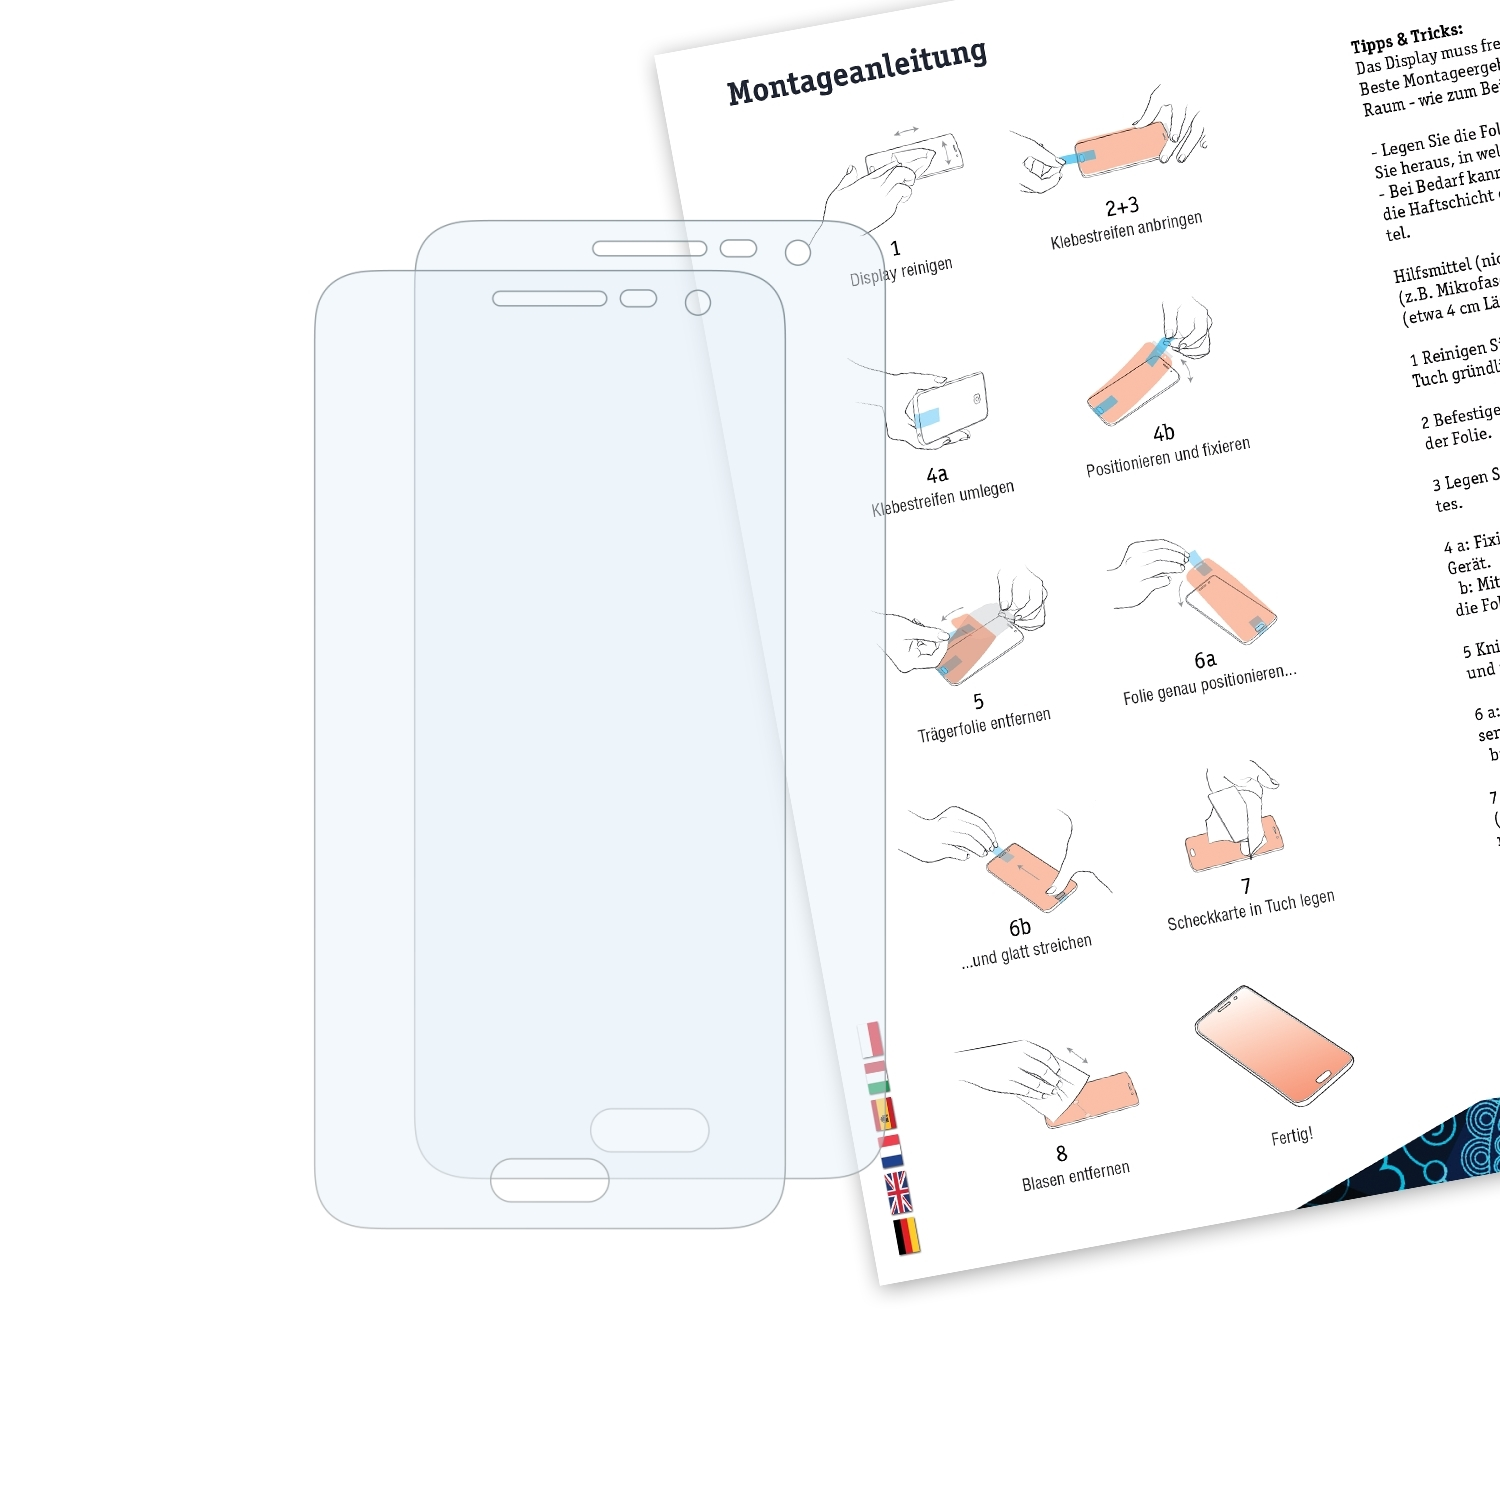 BRUNI 2x Galaxy Schutzfolie(für A3 Samsung Basics-Clear (2015))